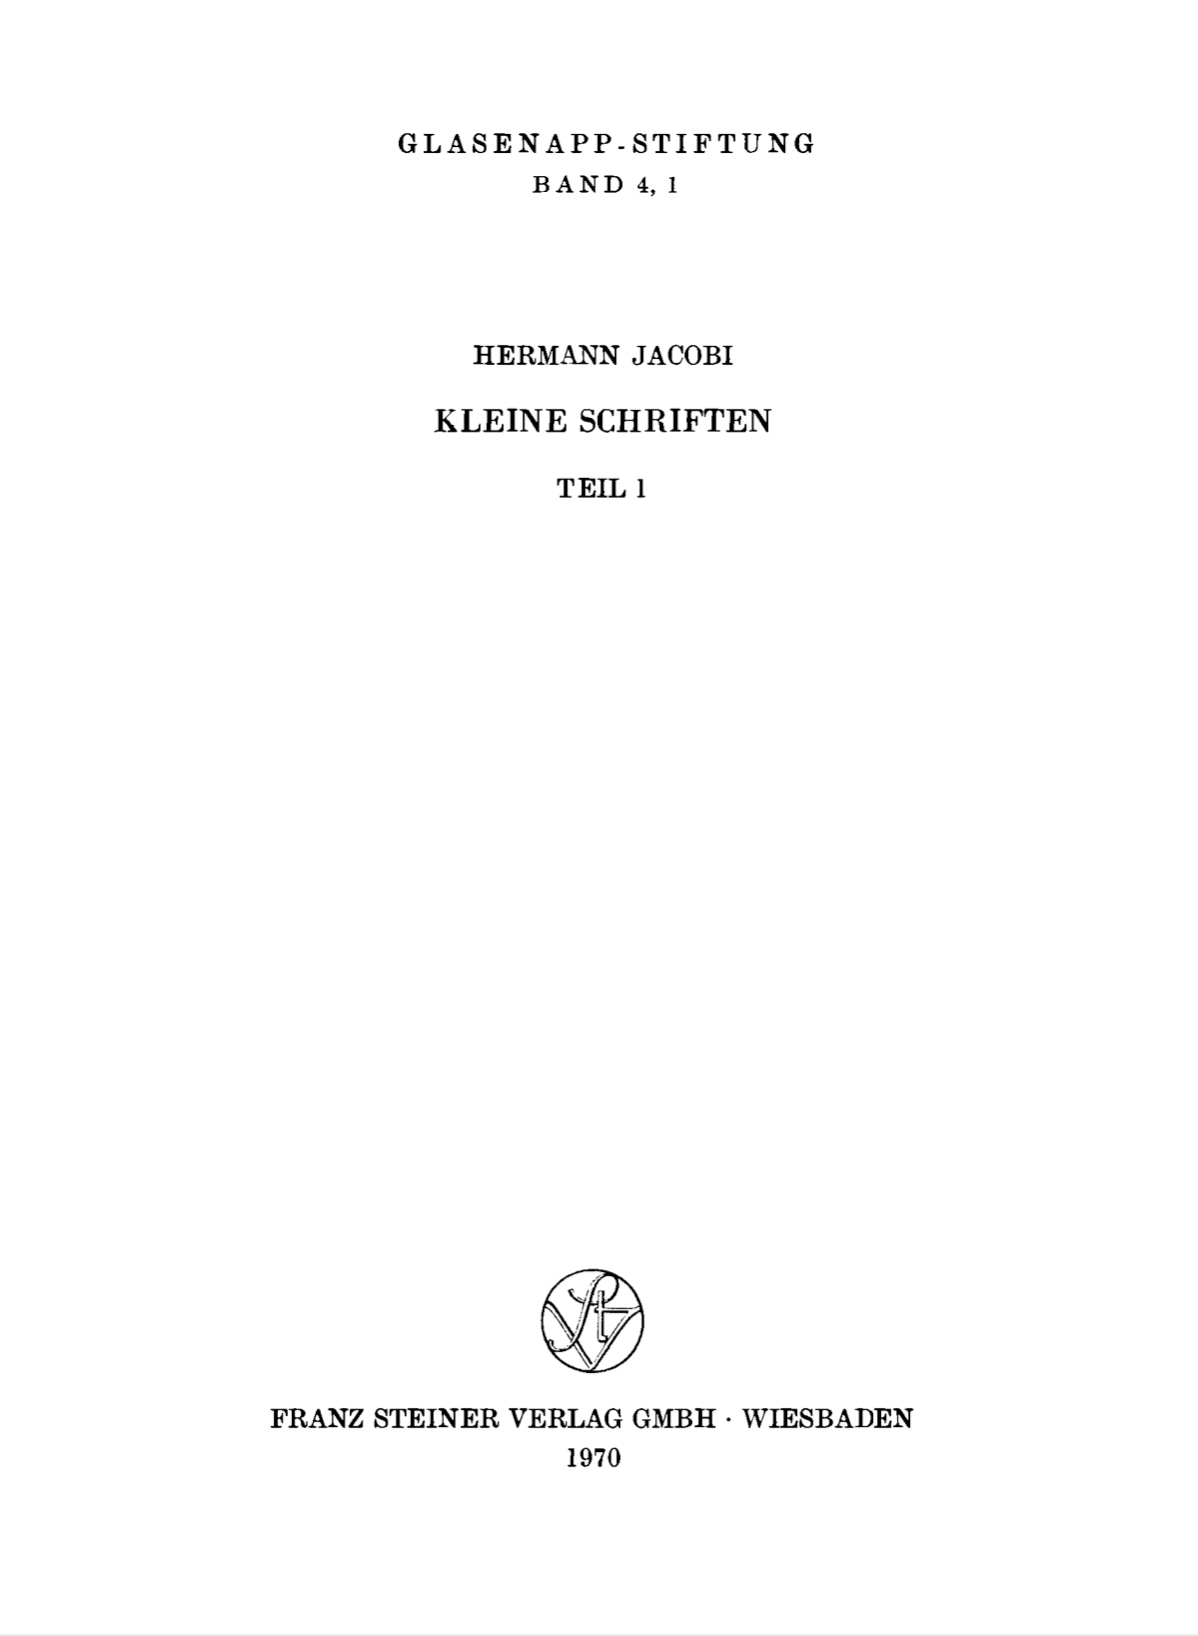 Kleine Schriften Vol. 1-front.jpg